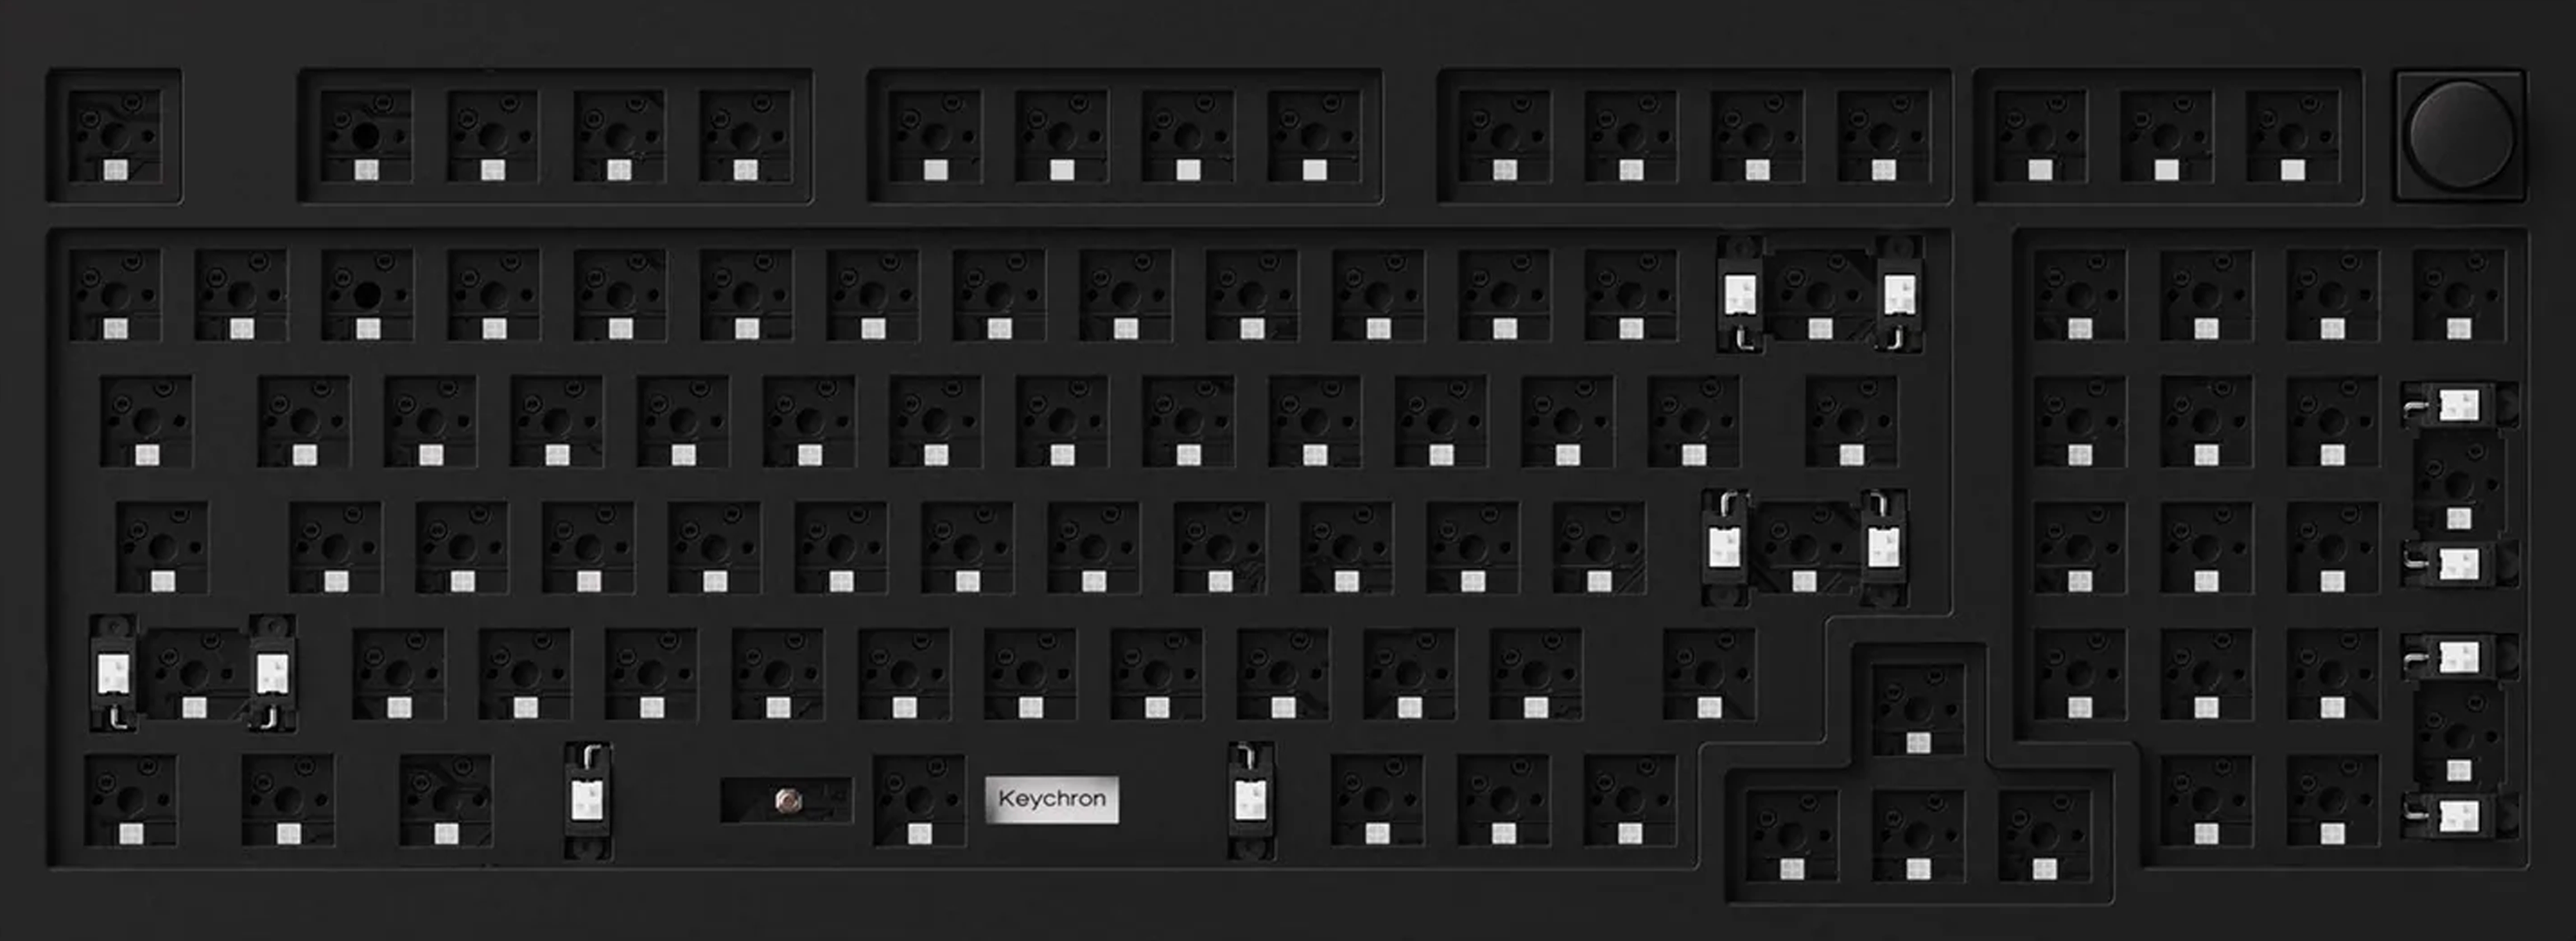 Keychron Q5 96% Mechanical Keyboard